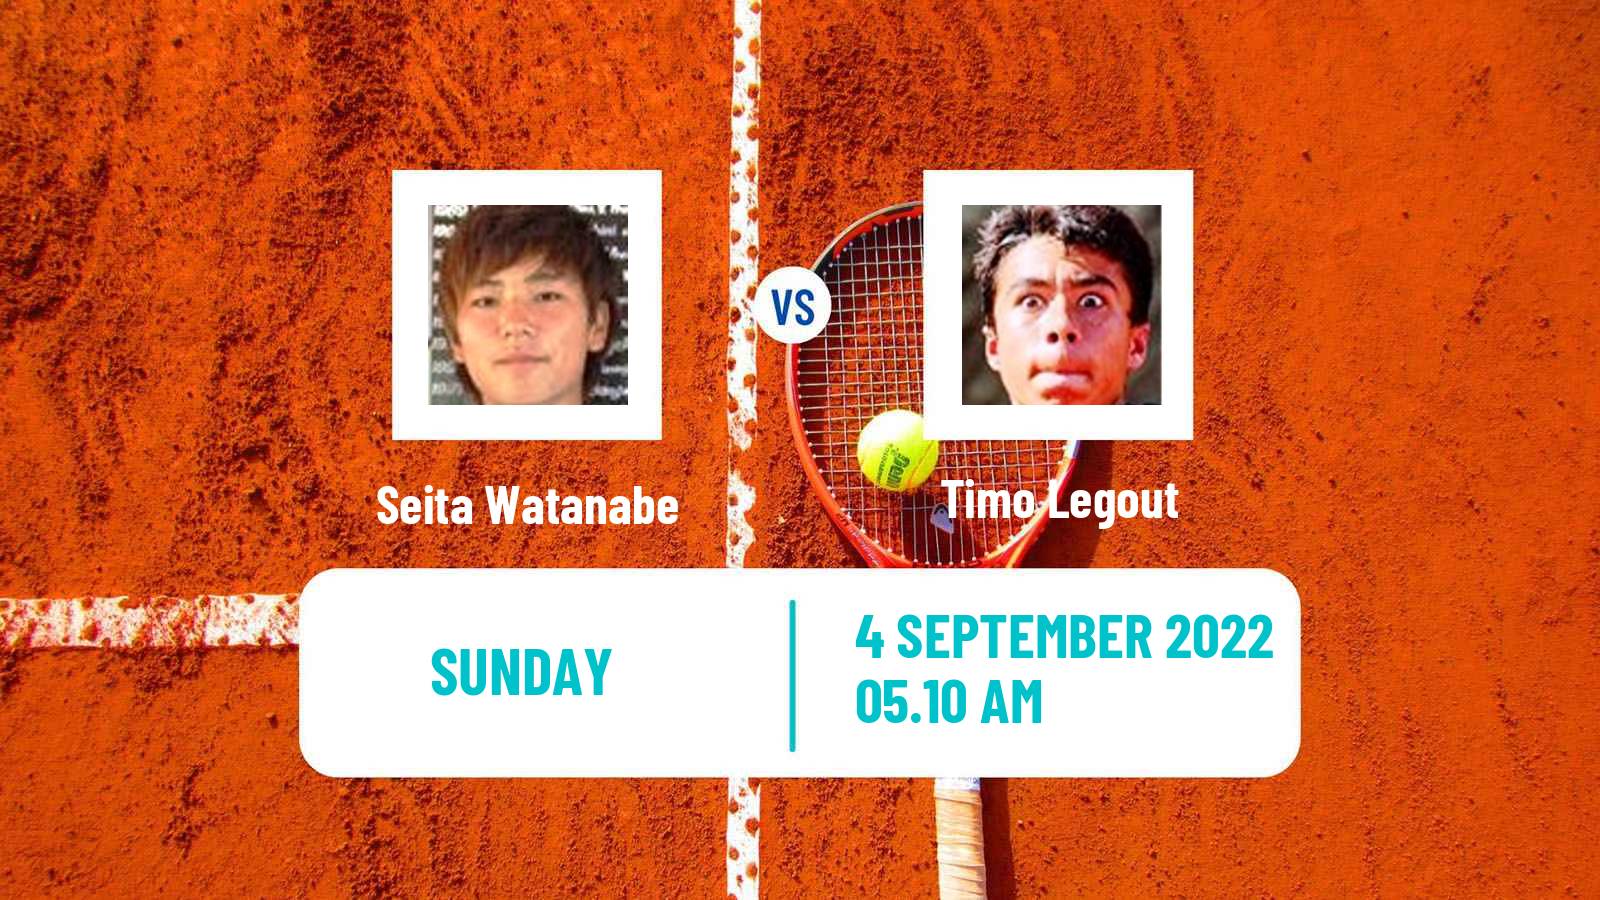 Tennis ATP Challenger Seita Watanabe - Timo Legout